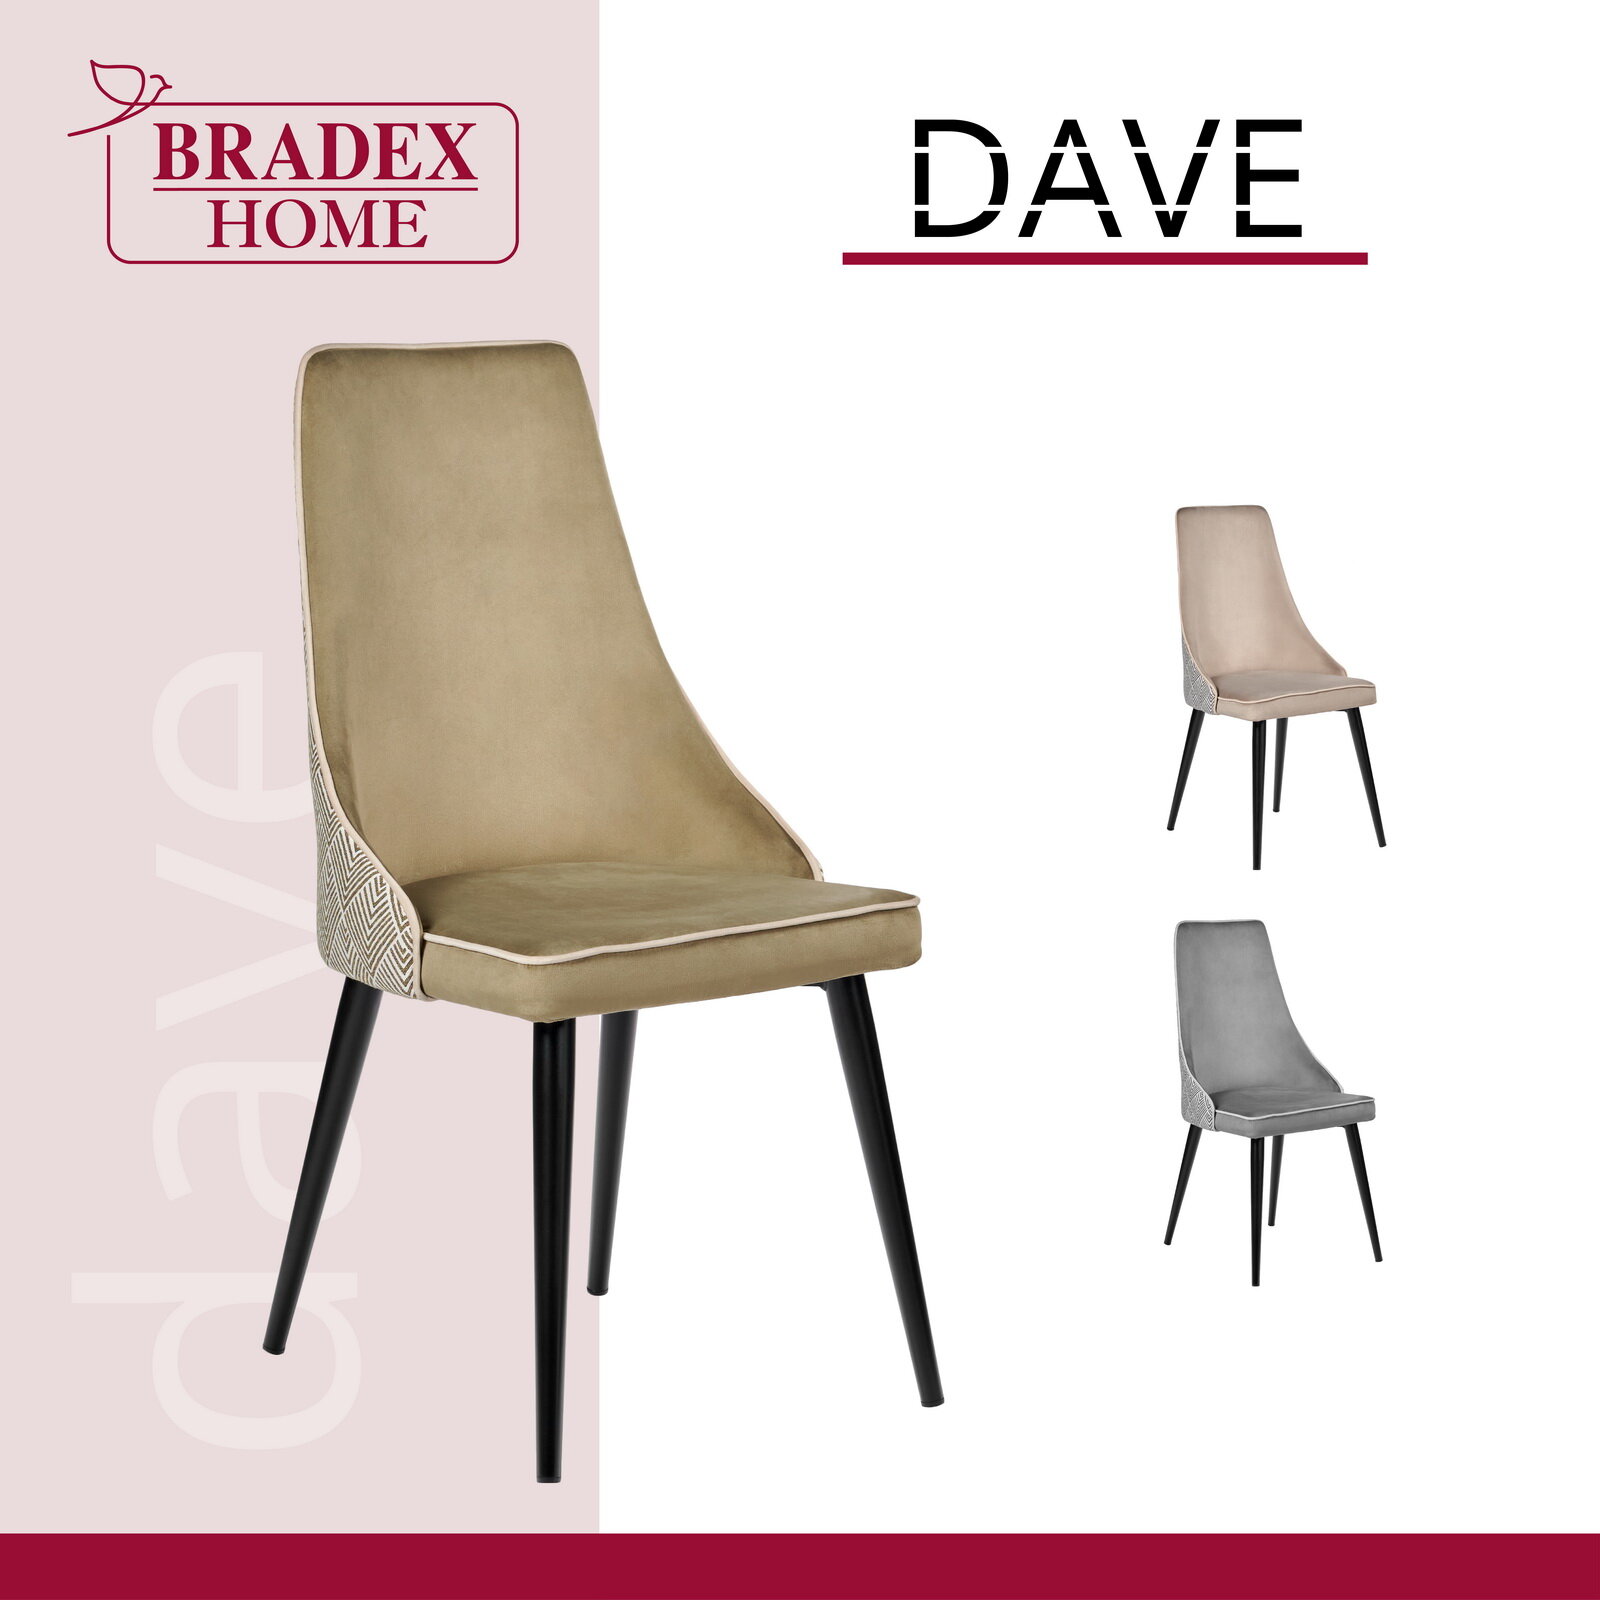 Стул Dave оливковый / Стулья для кухни / Кухонные стулья со спинкой / Стул кресло / Кресло на балкон / Стулья для гостиной / Мебель лофт